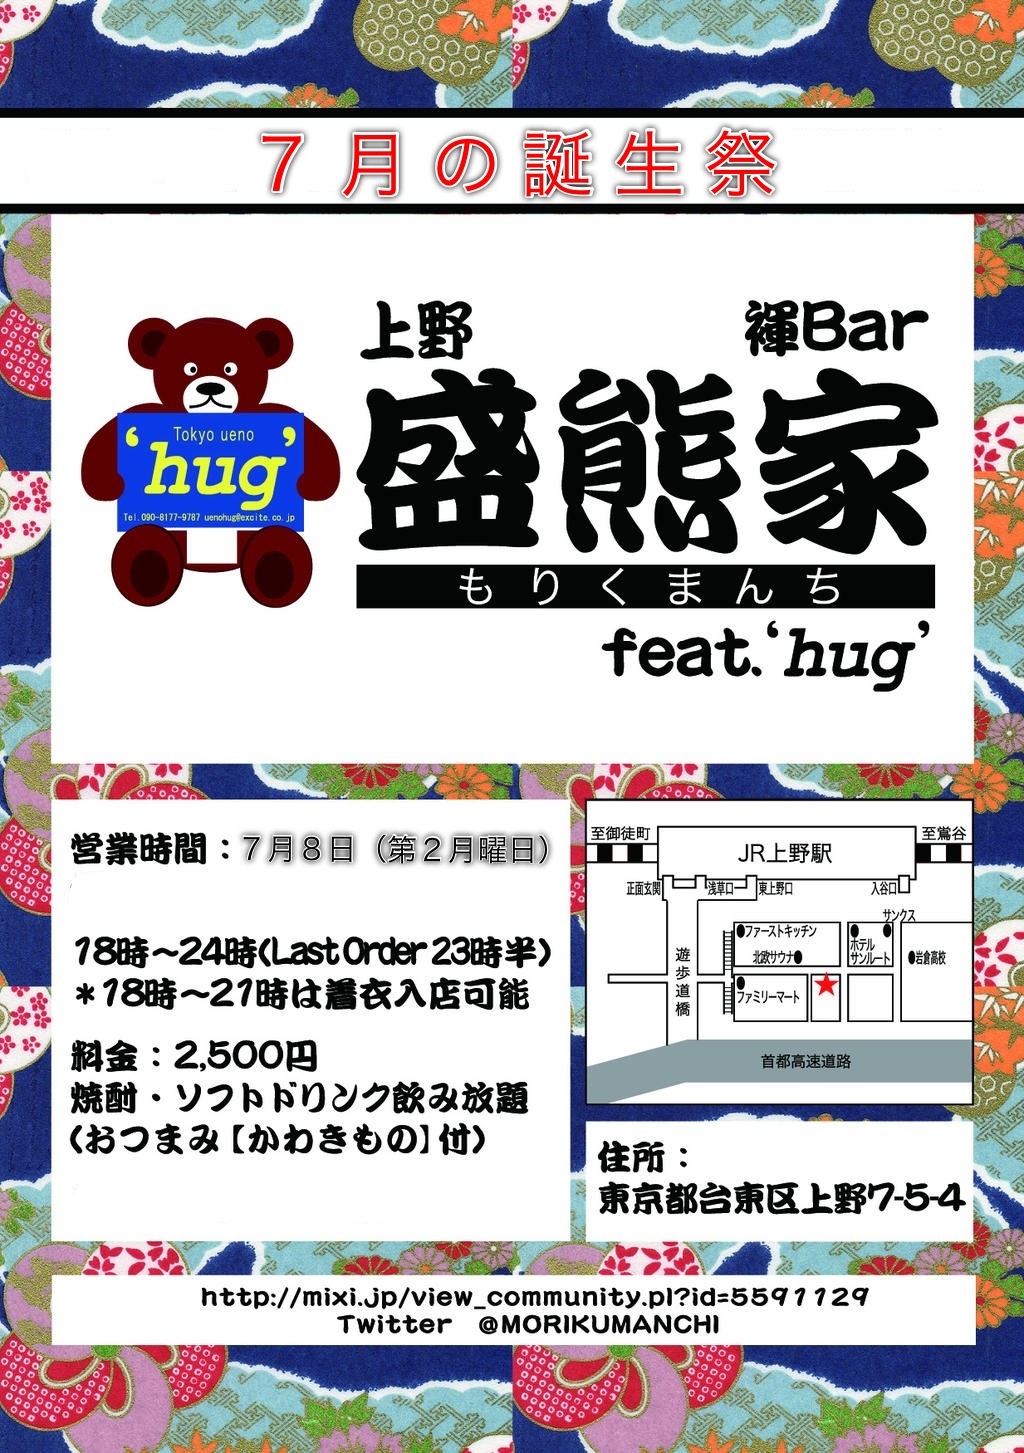 褌BAR盛熊家 feat. hug 『７月の誕生祭』 1024x1453 498.7kb